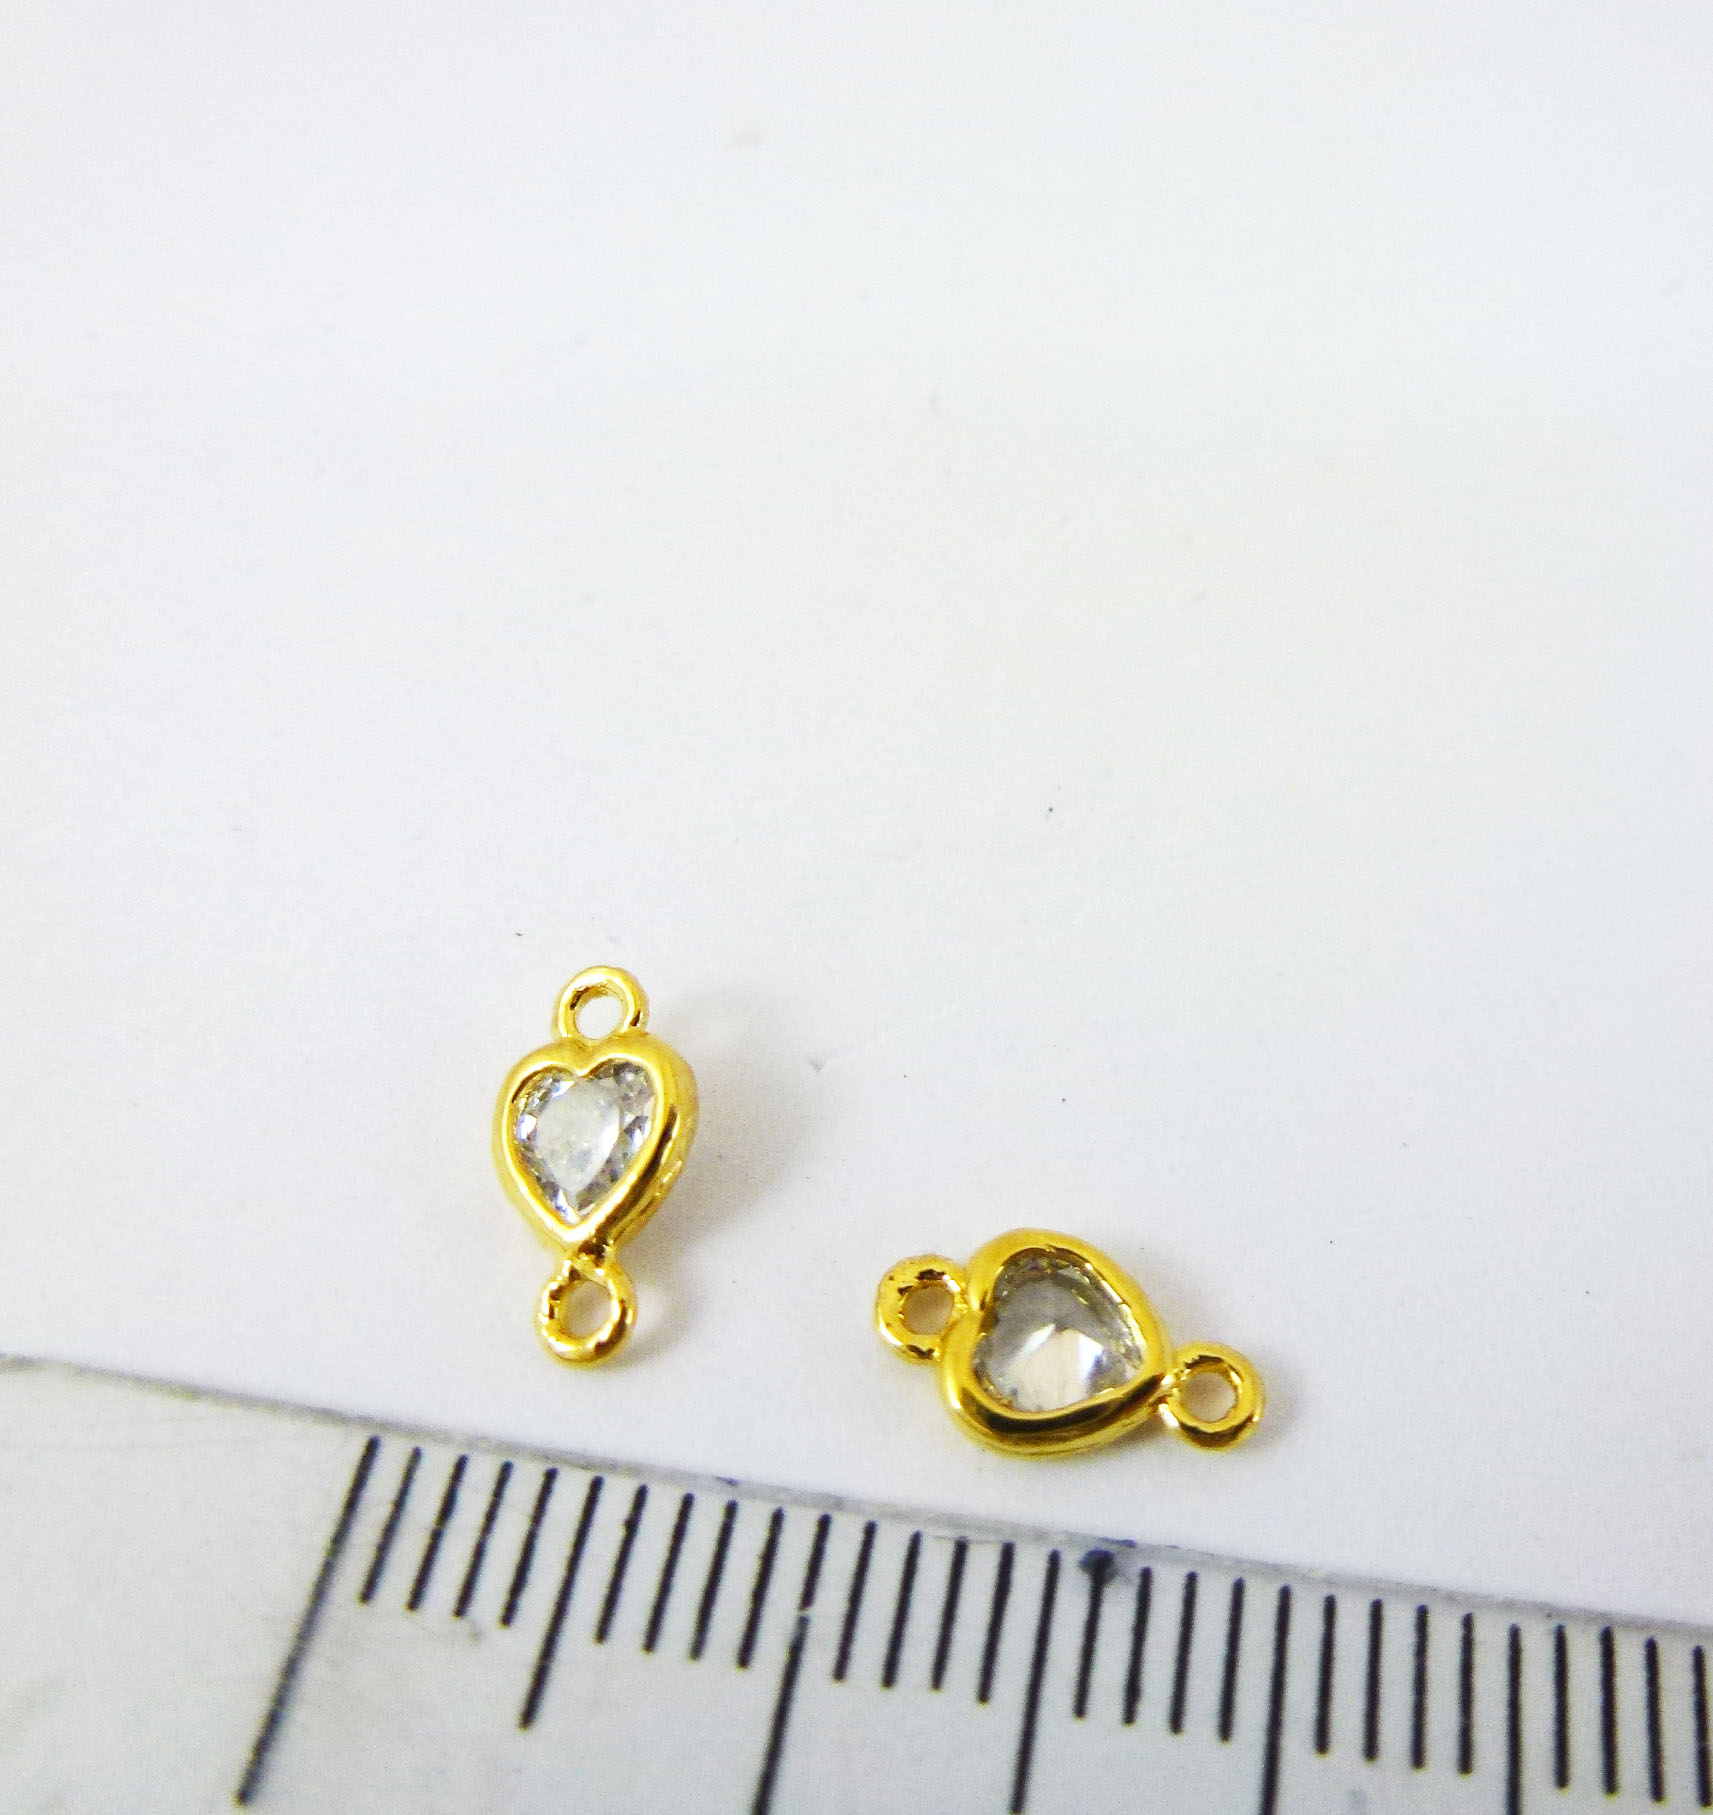 5mm銅鍍金雙孔心形鑽